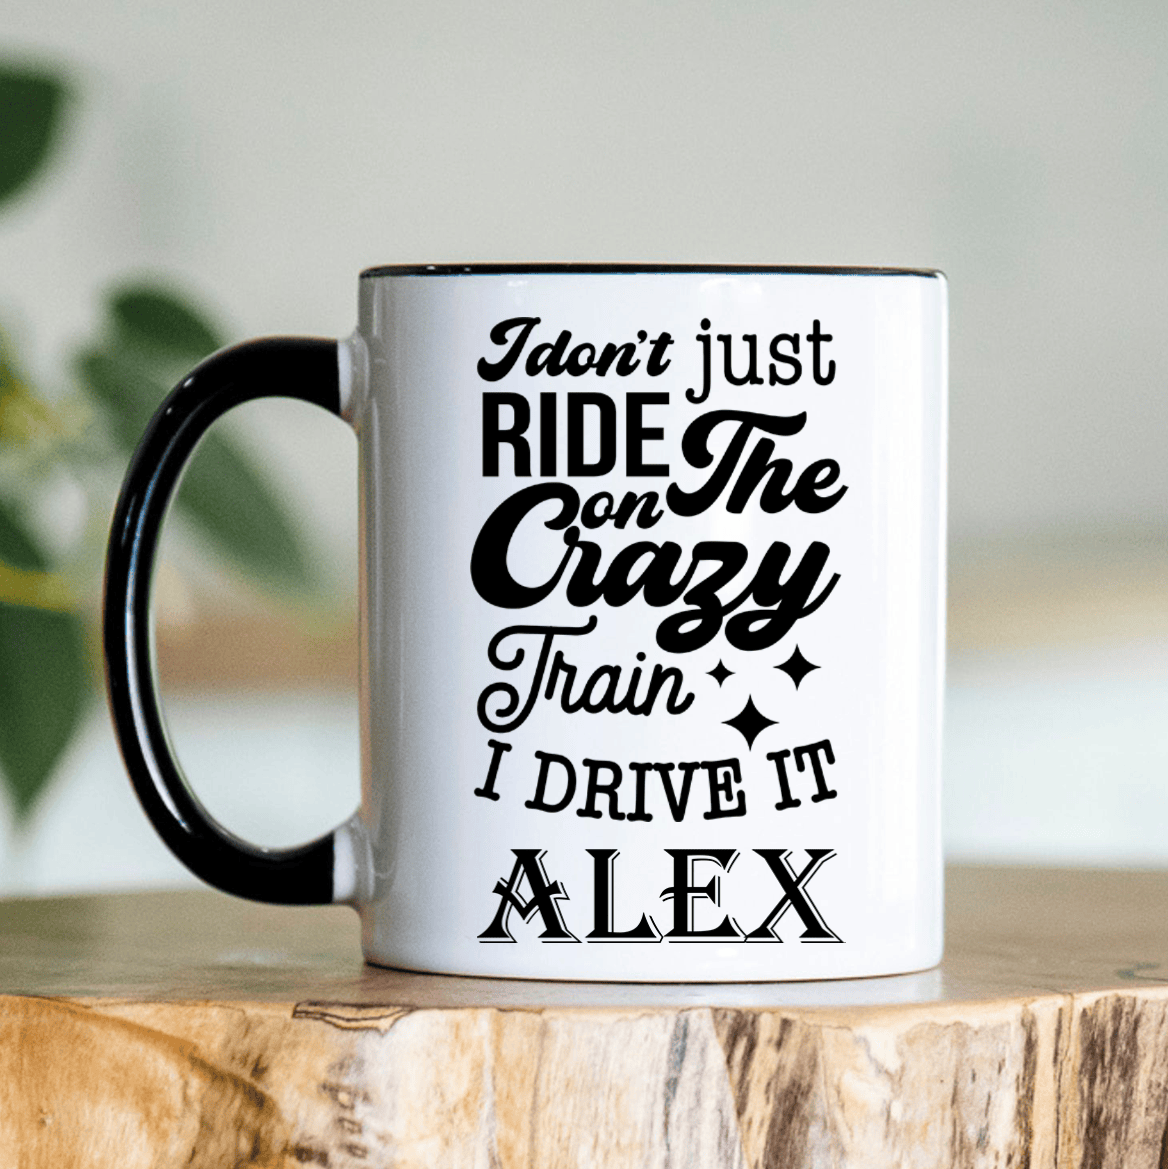 Black Funny Coffee Mug With Crazy Train Driver Design